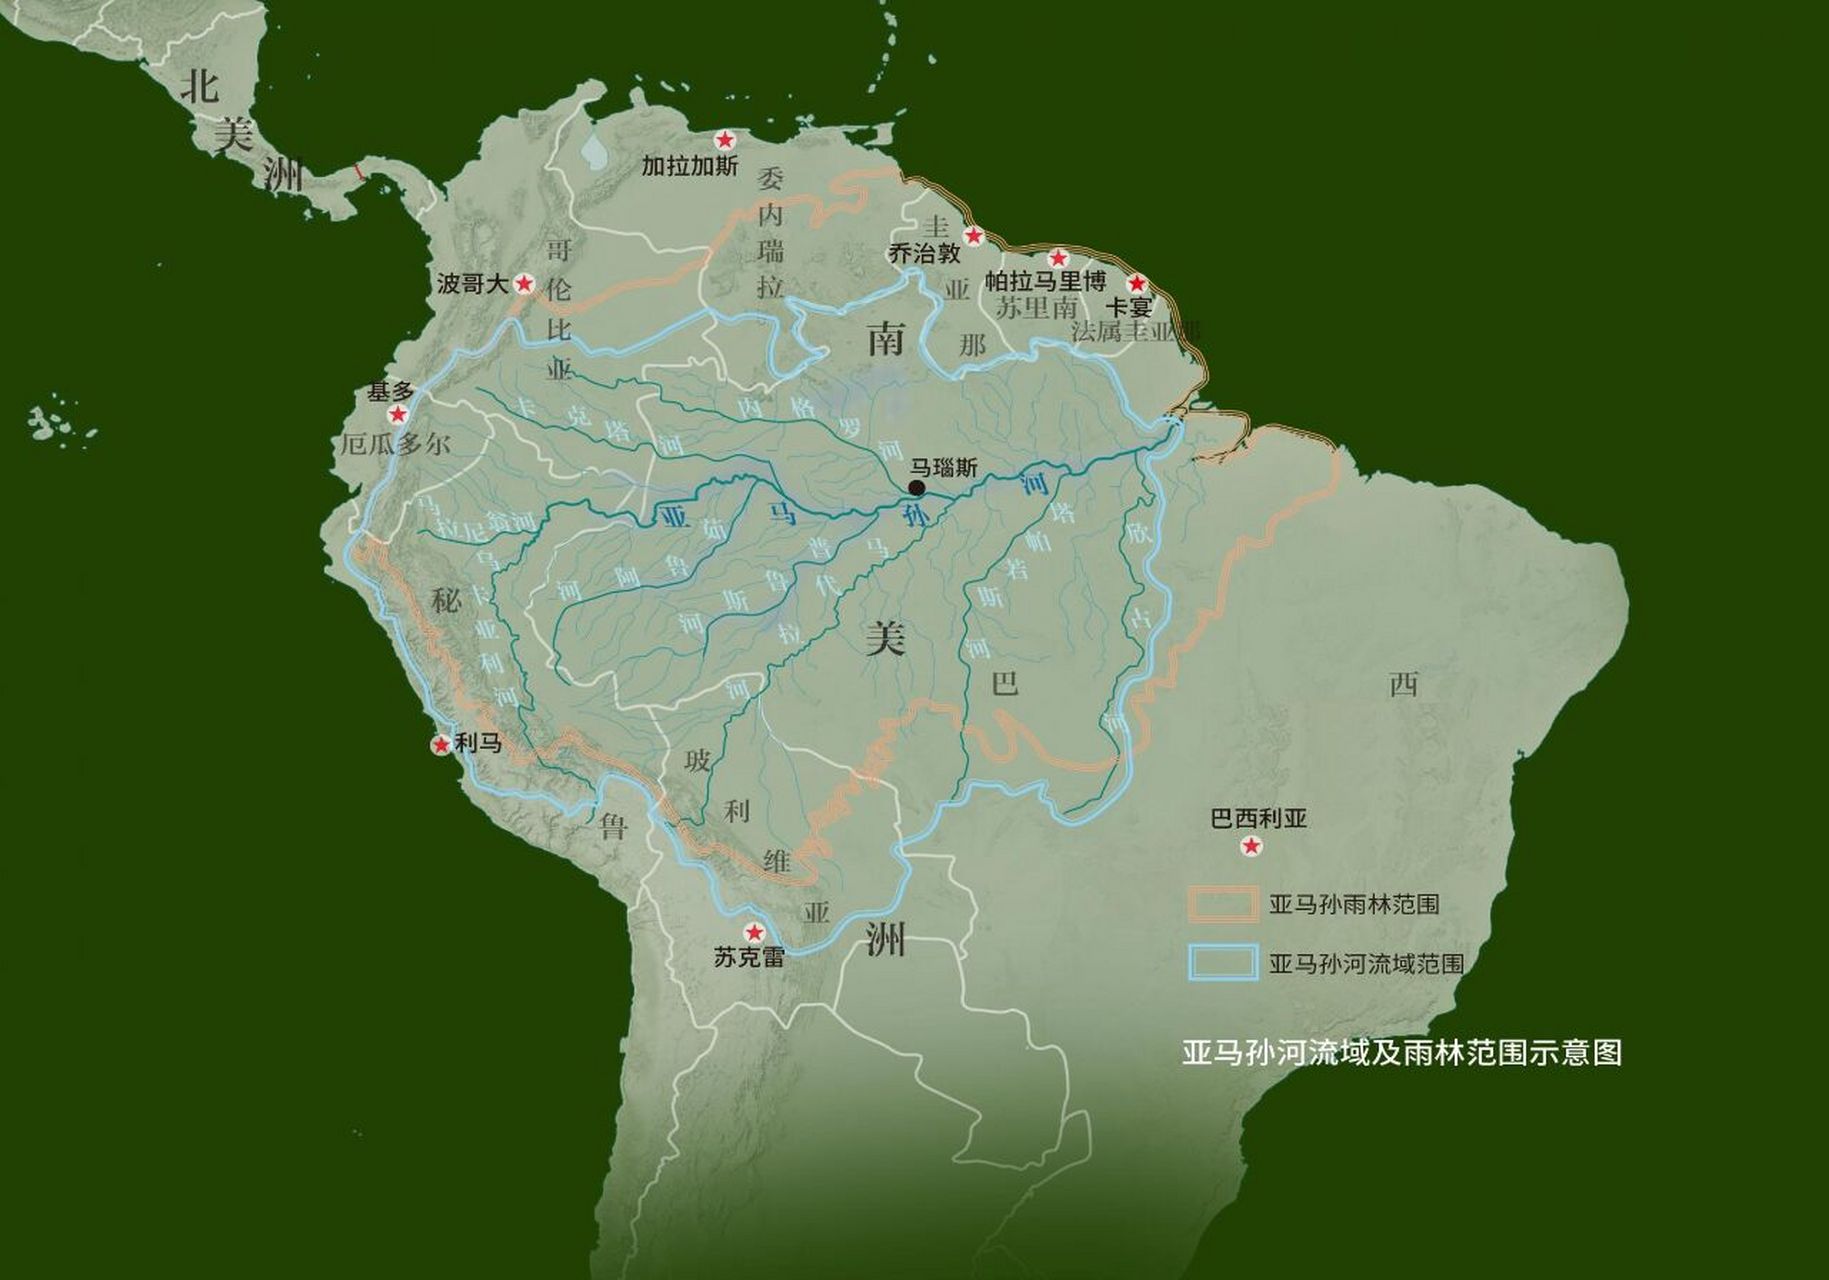 亚马孙河流域及雨林范围示意图 亚马孙河是世界上年径流量最大,支流